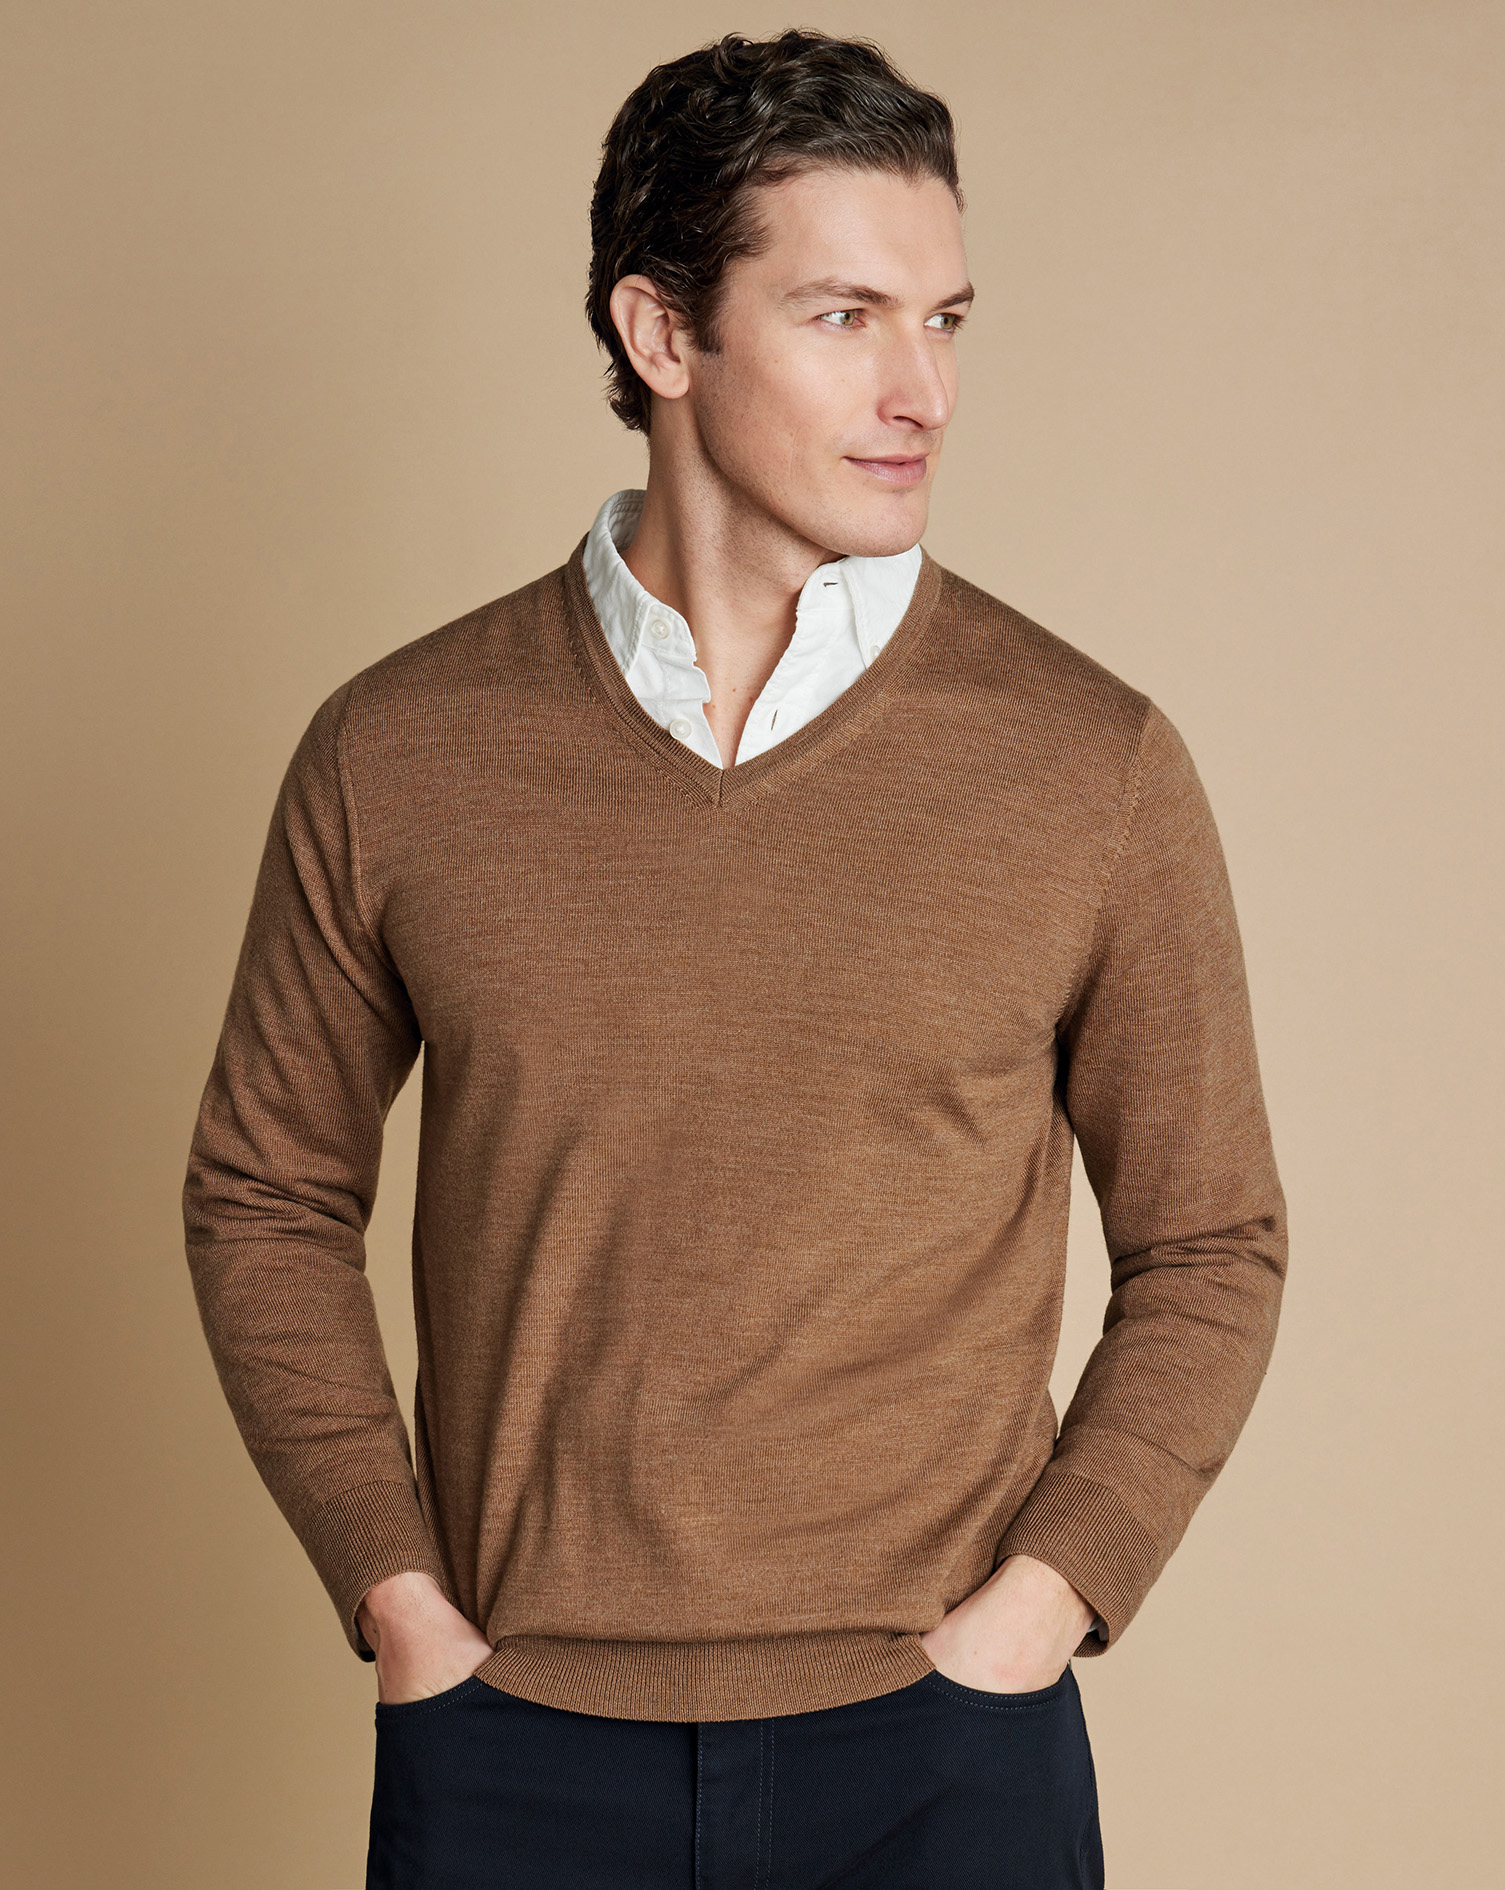 Men's Charles Tyrwhitt Merino V-Neck Sweater - Sand Brown Neutral Size Medium Wool
